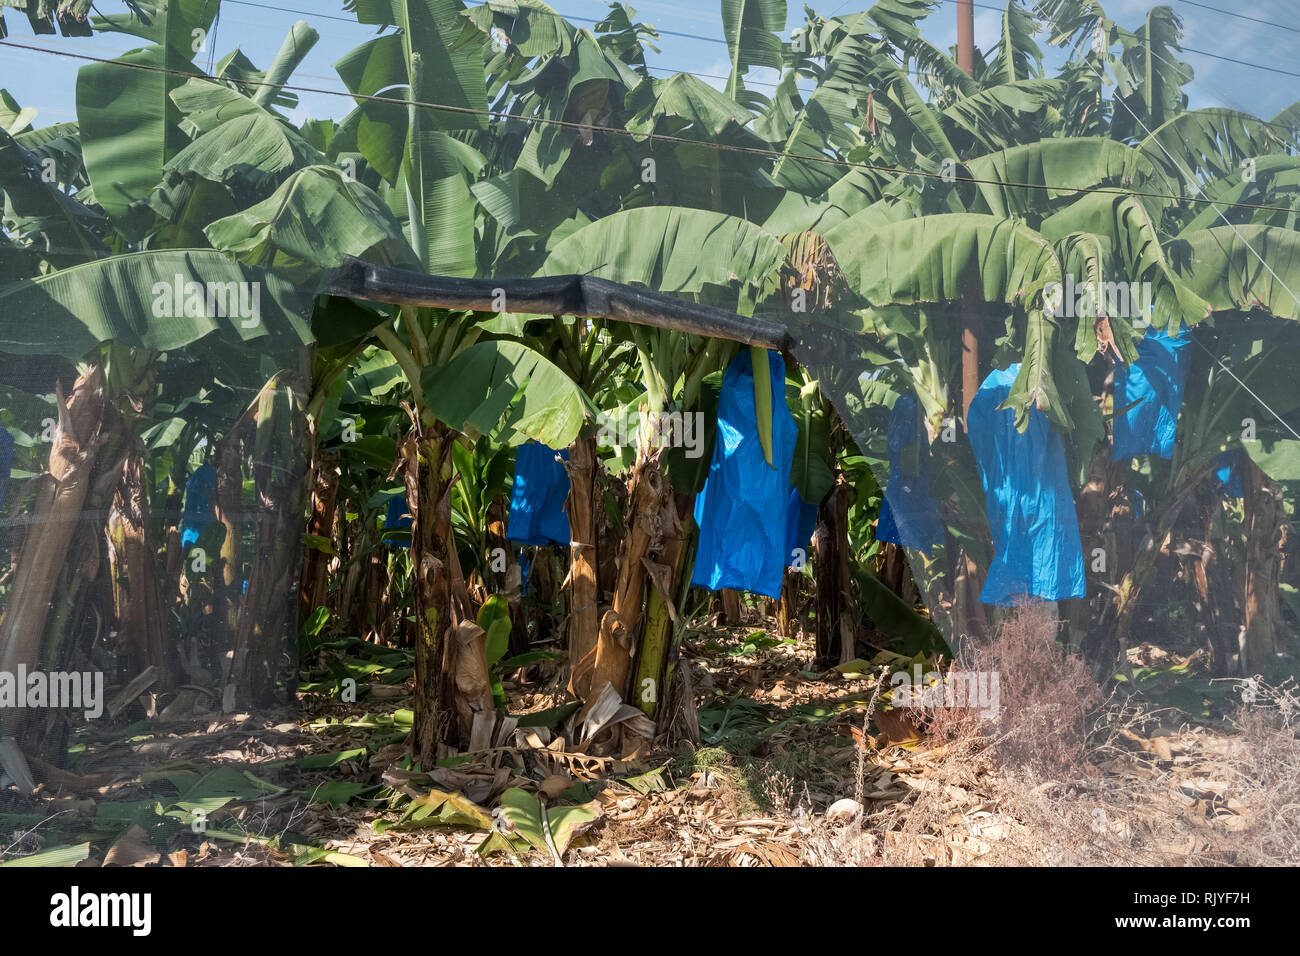 Les plantations de banane recouverte de grillage en Israël Banque D'Images